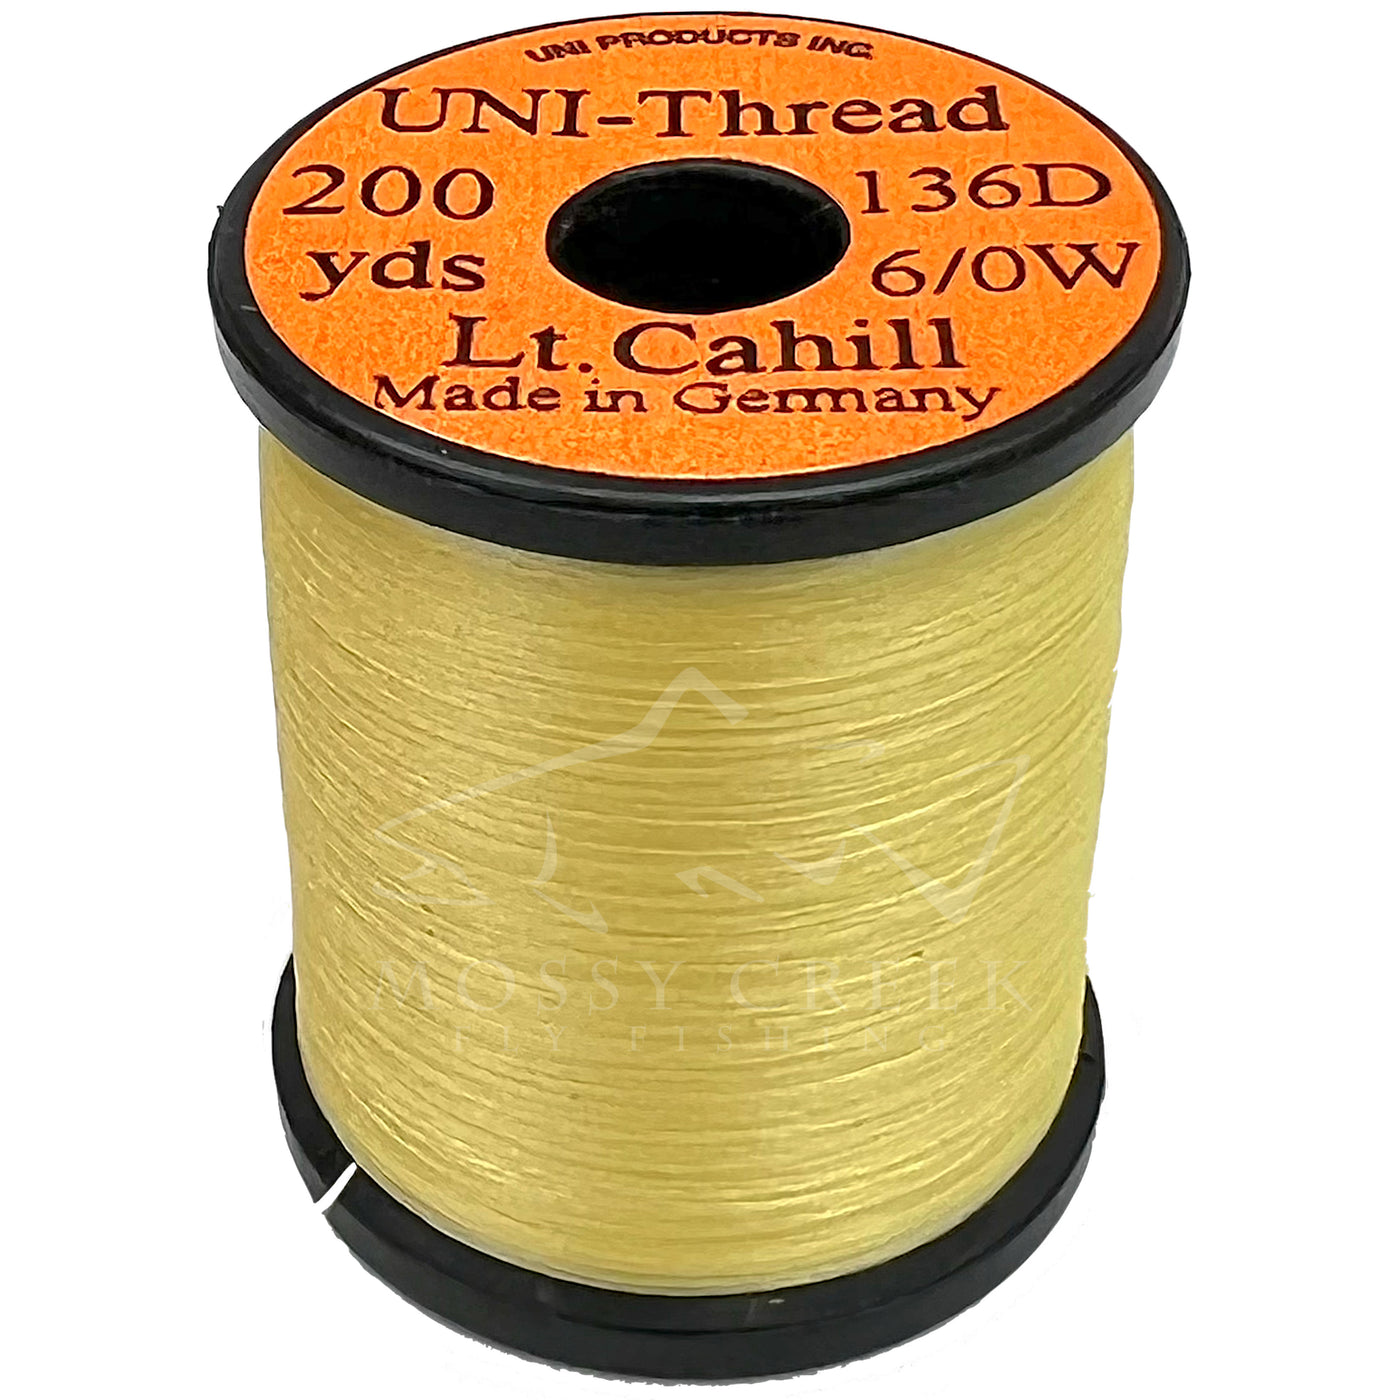 Uni 8/0 Waxed Thread - Light Cahill